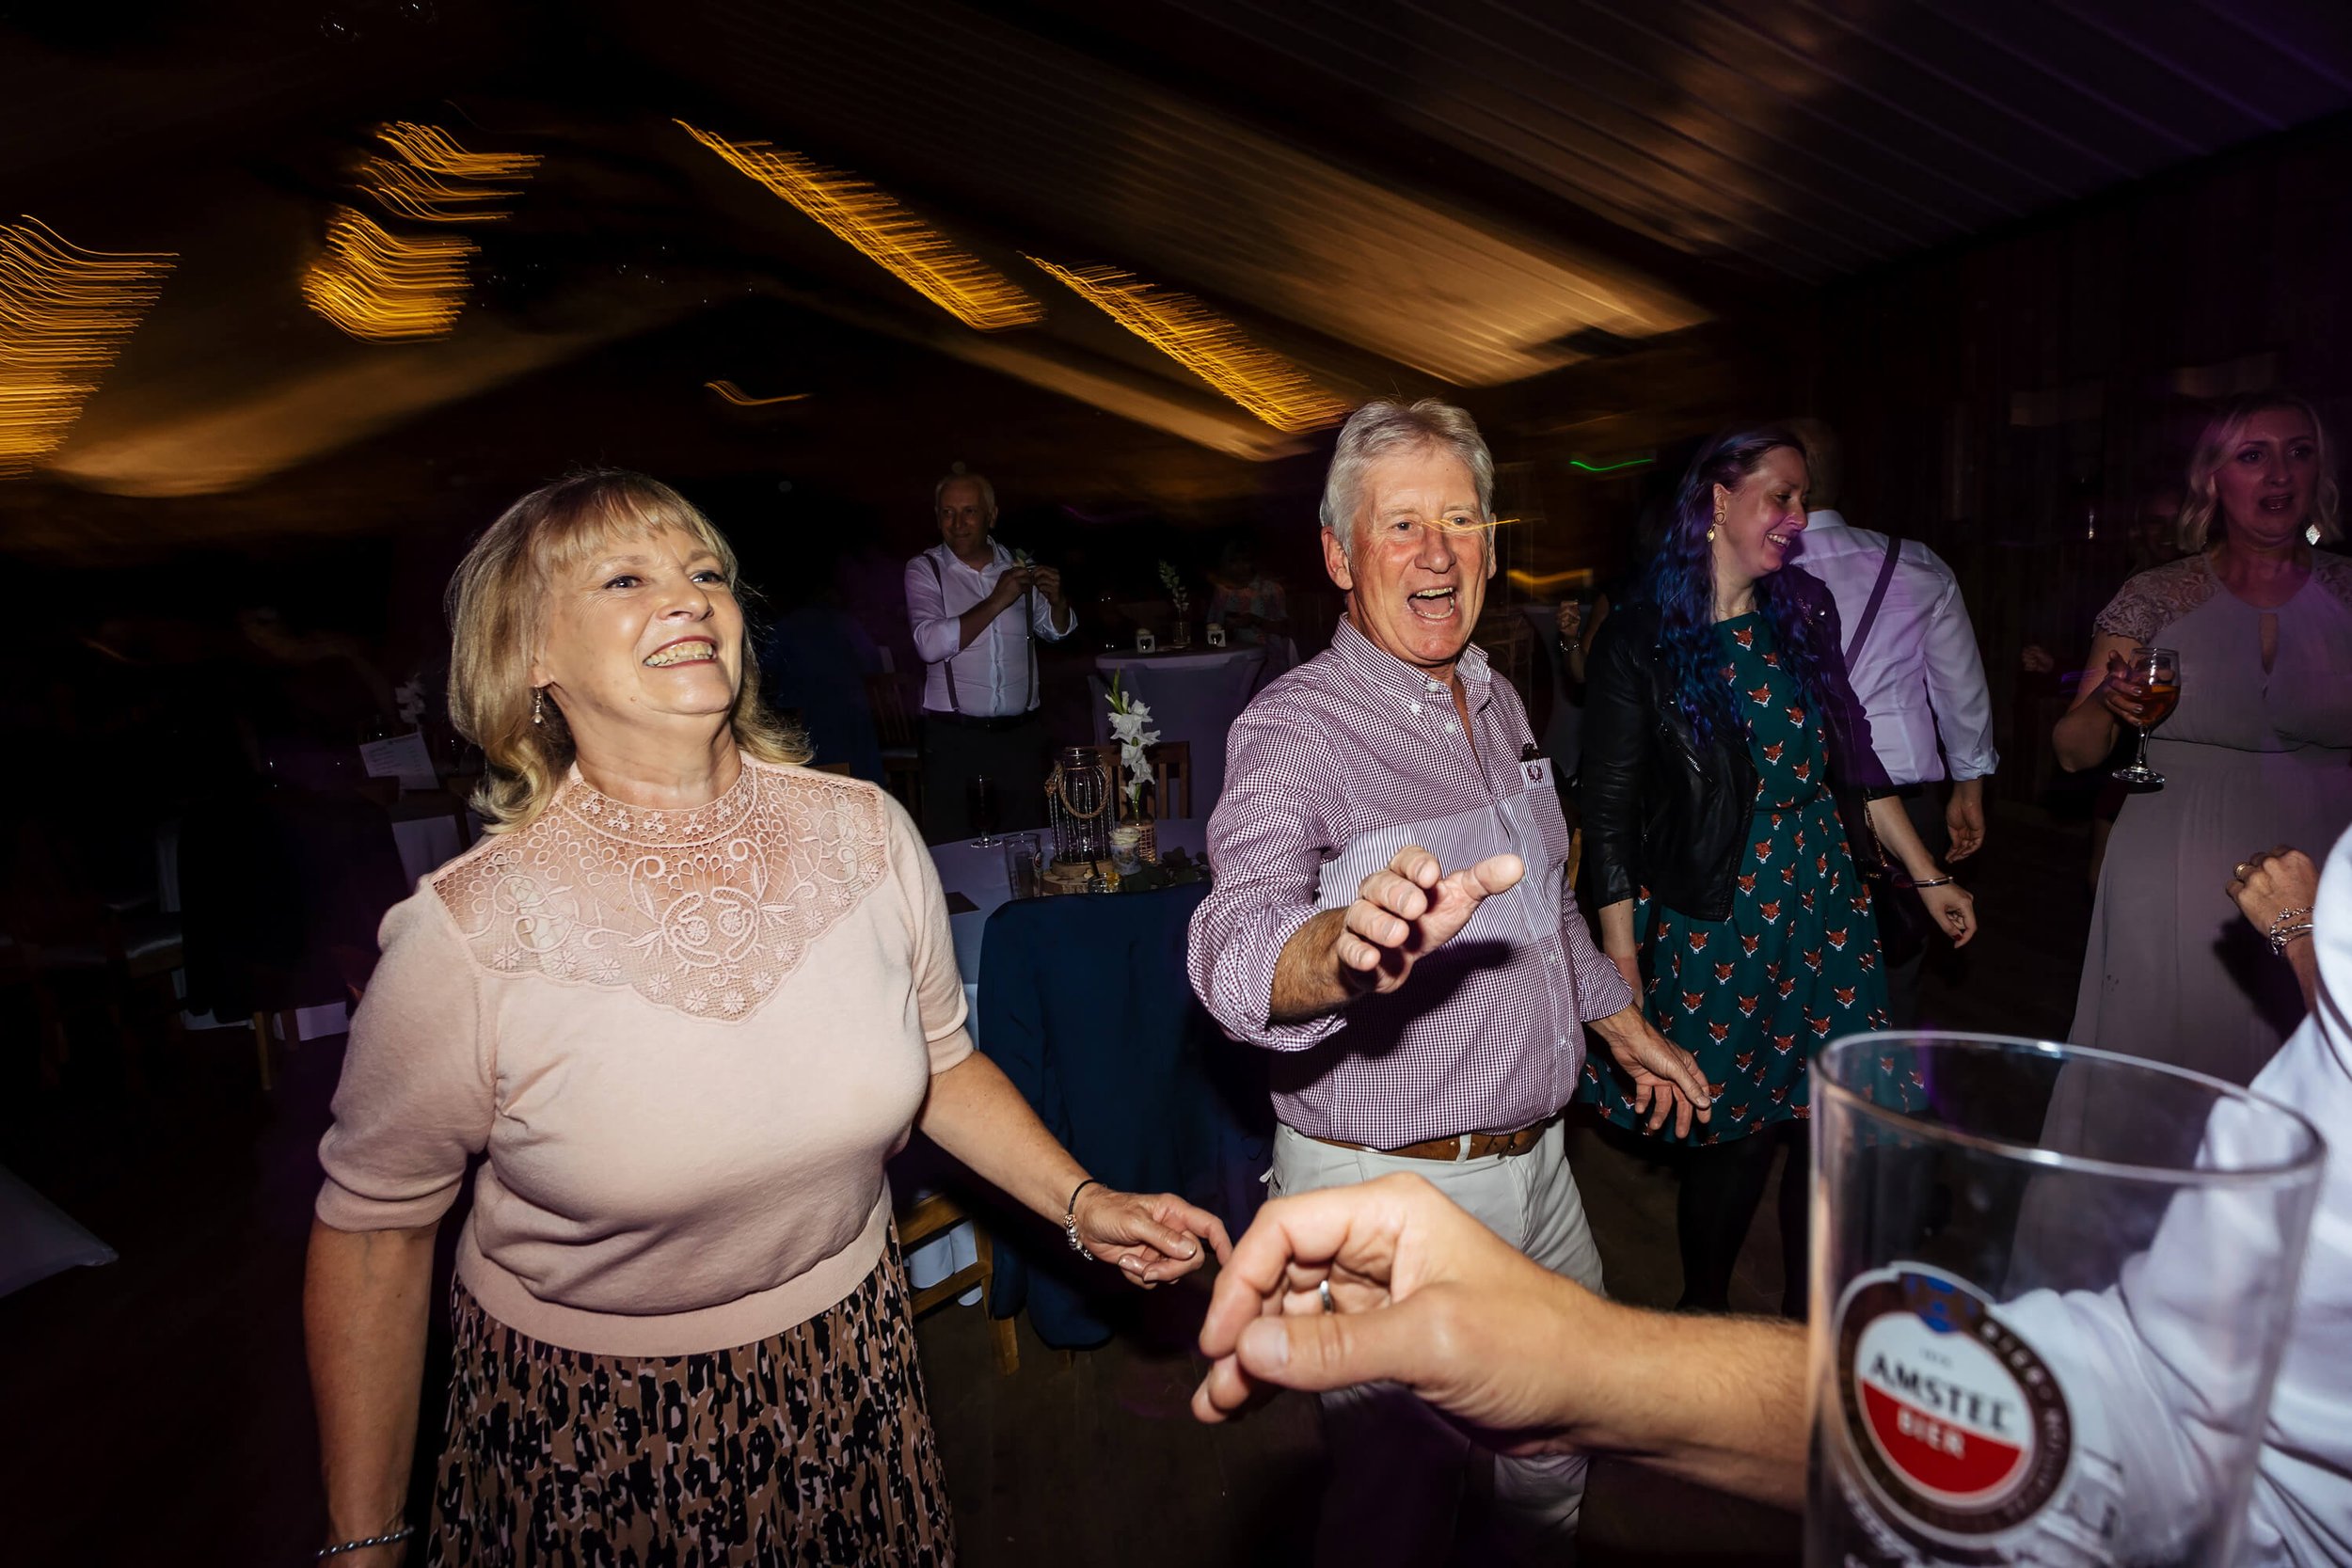 Wedding guests having fun on the dance floor in York